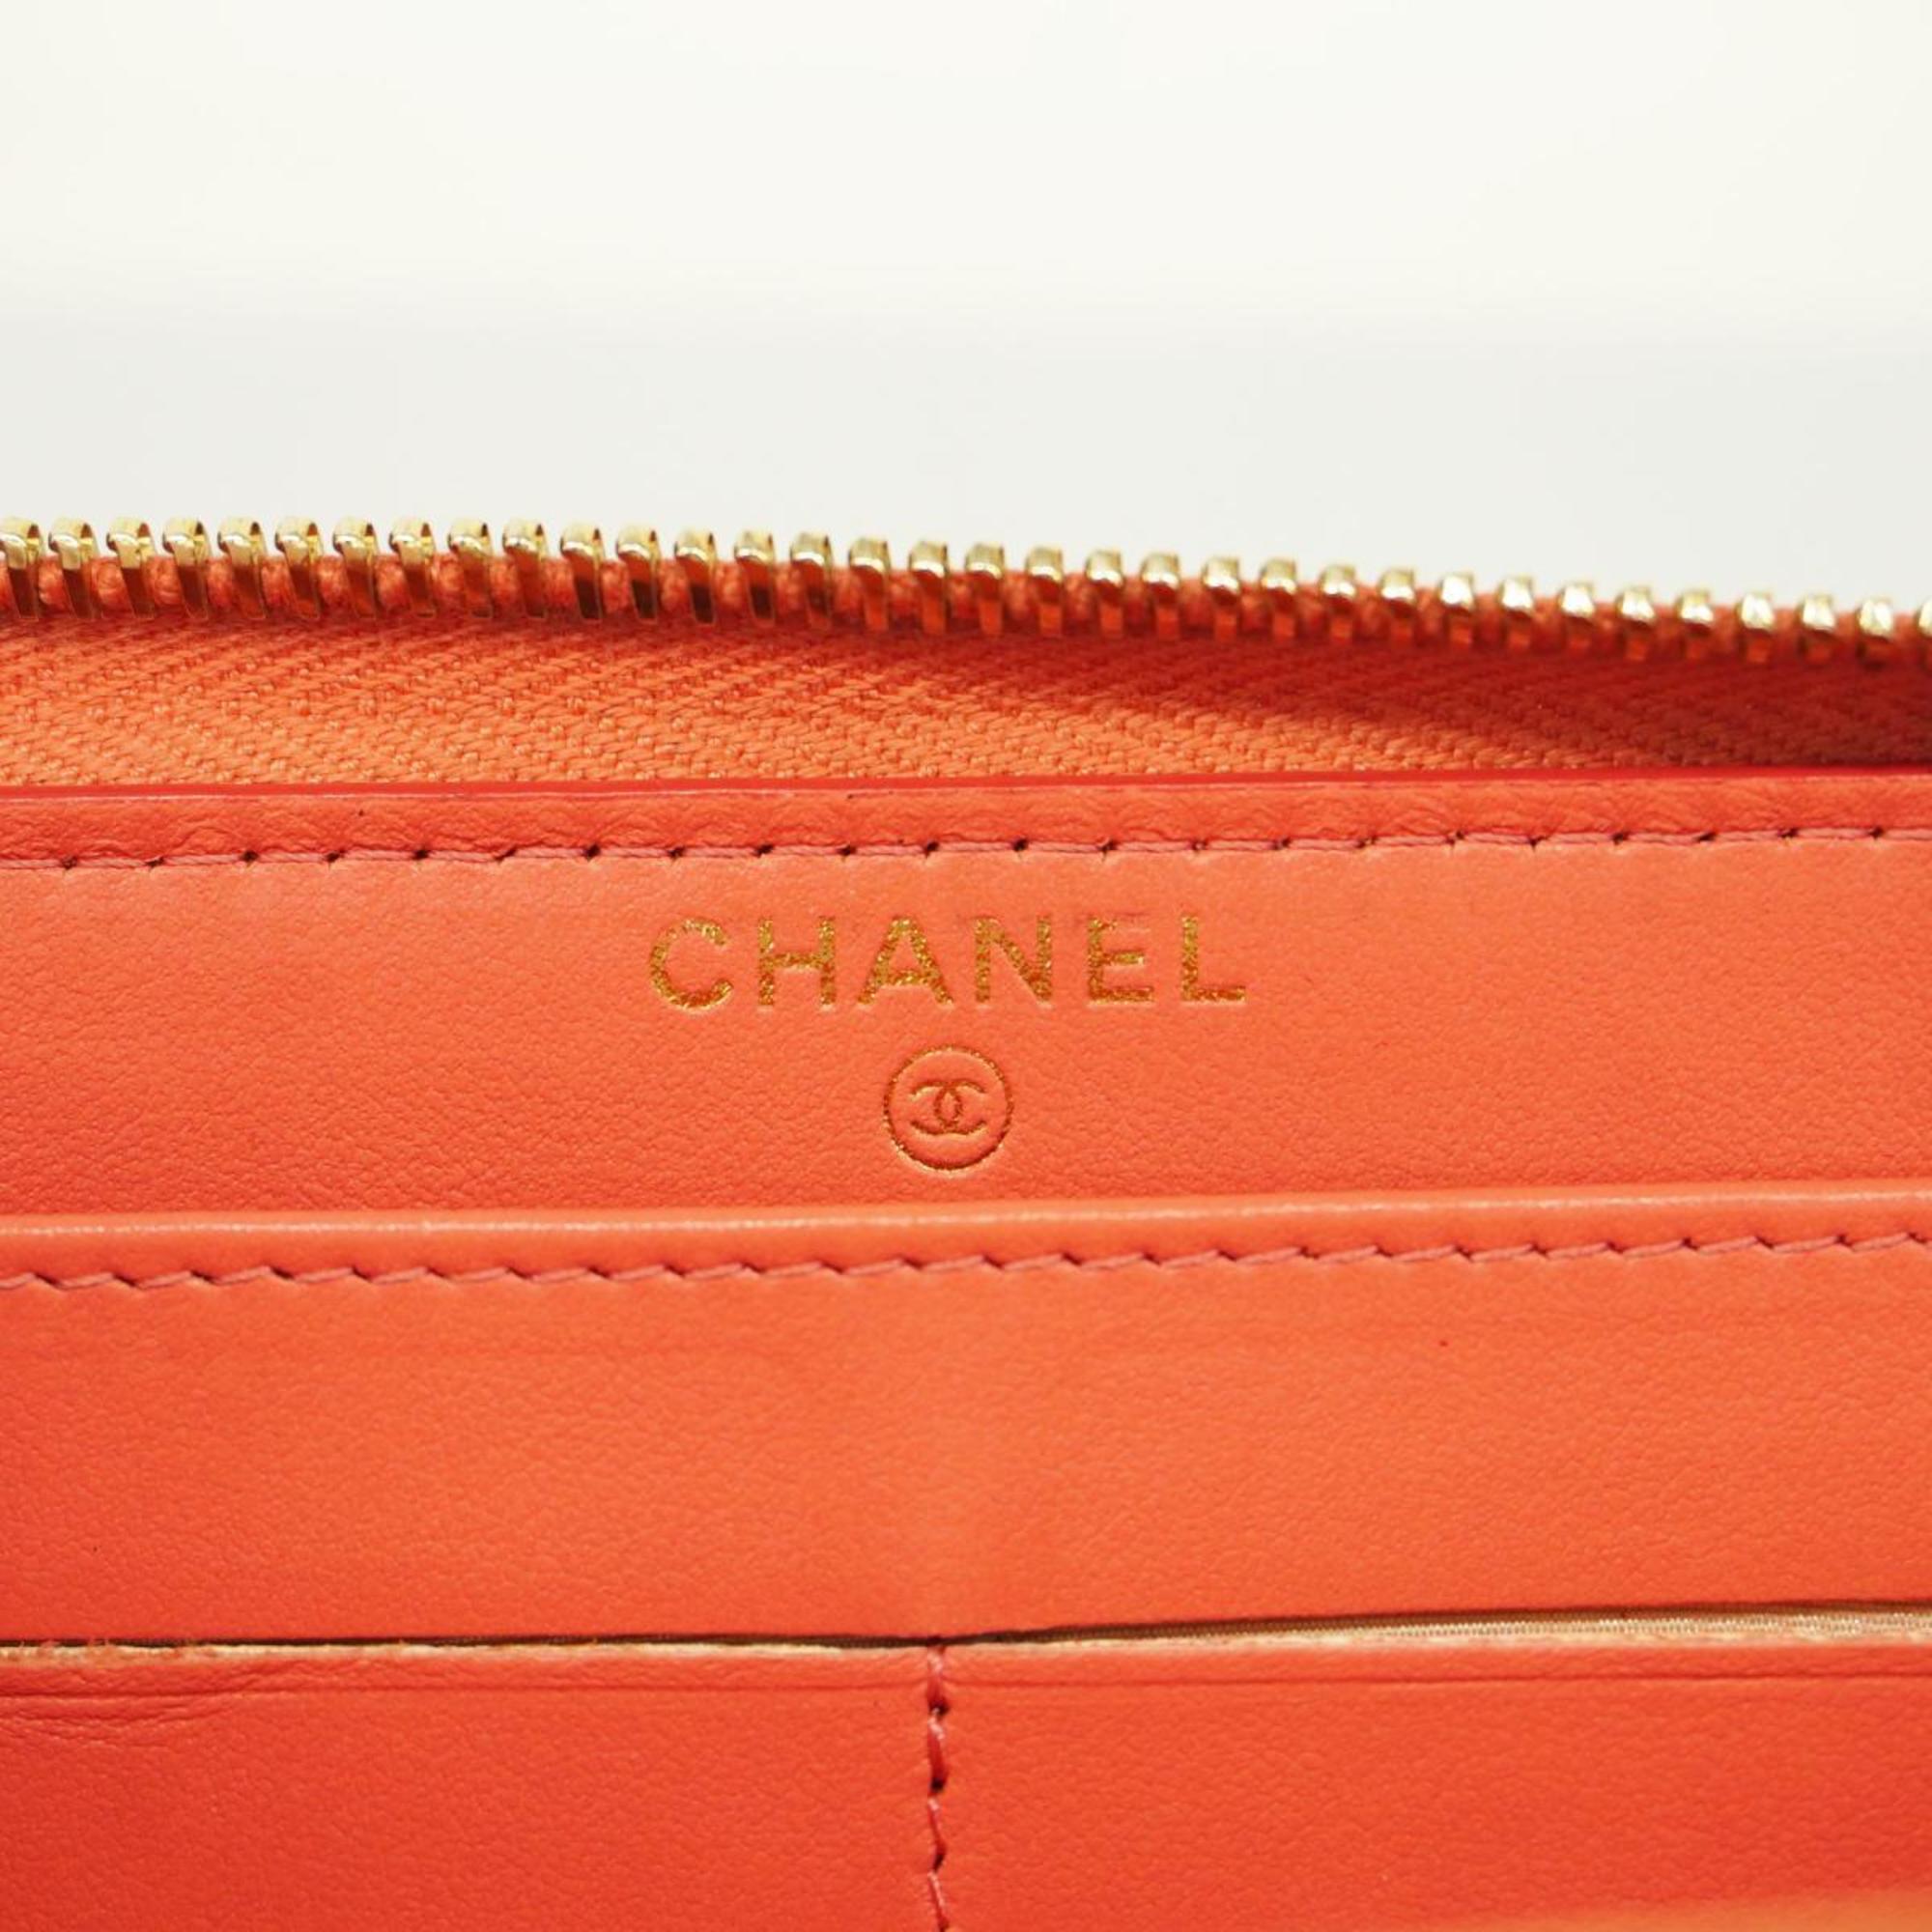 シャネル(Chanel) シャネル 長財布 マトラッセ キャビアスキン ピンク   レディース